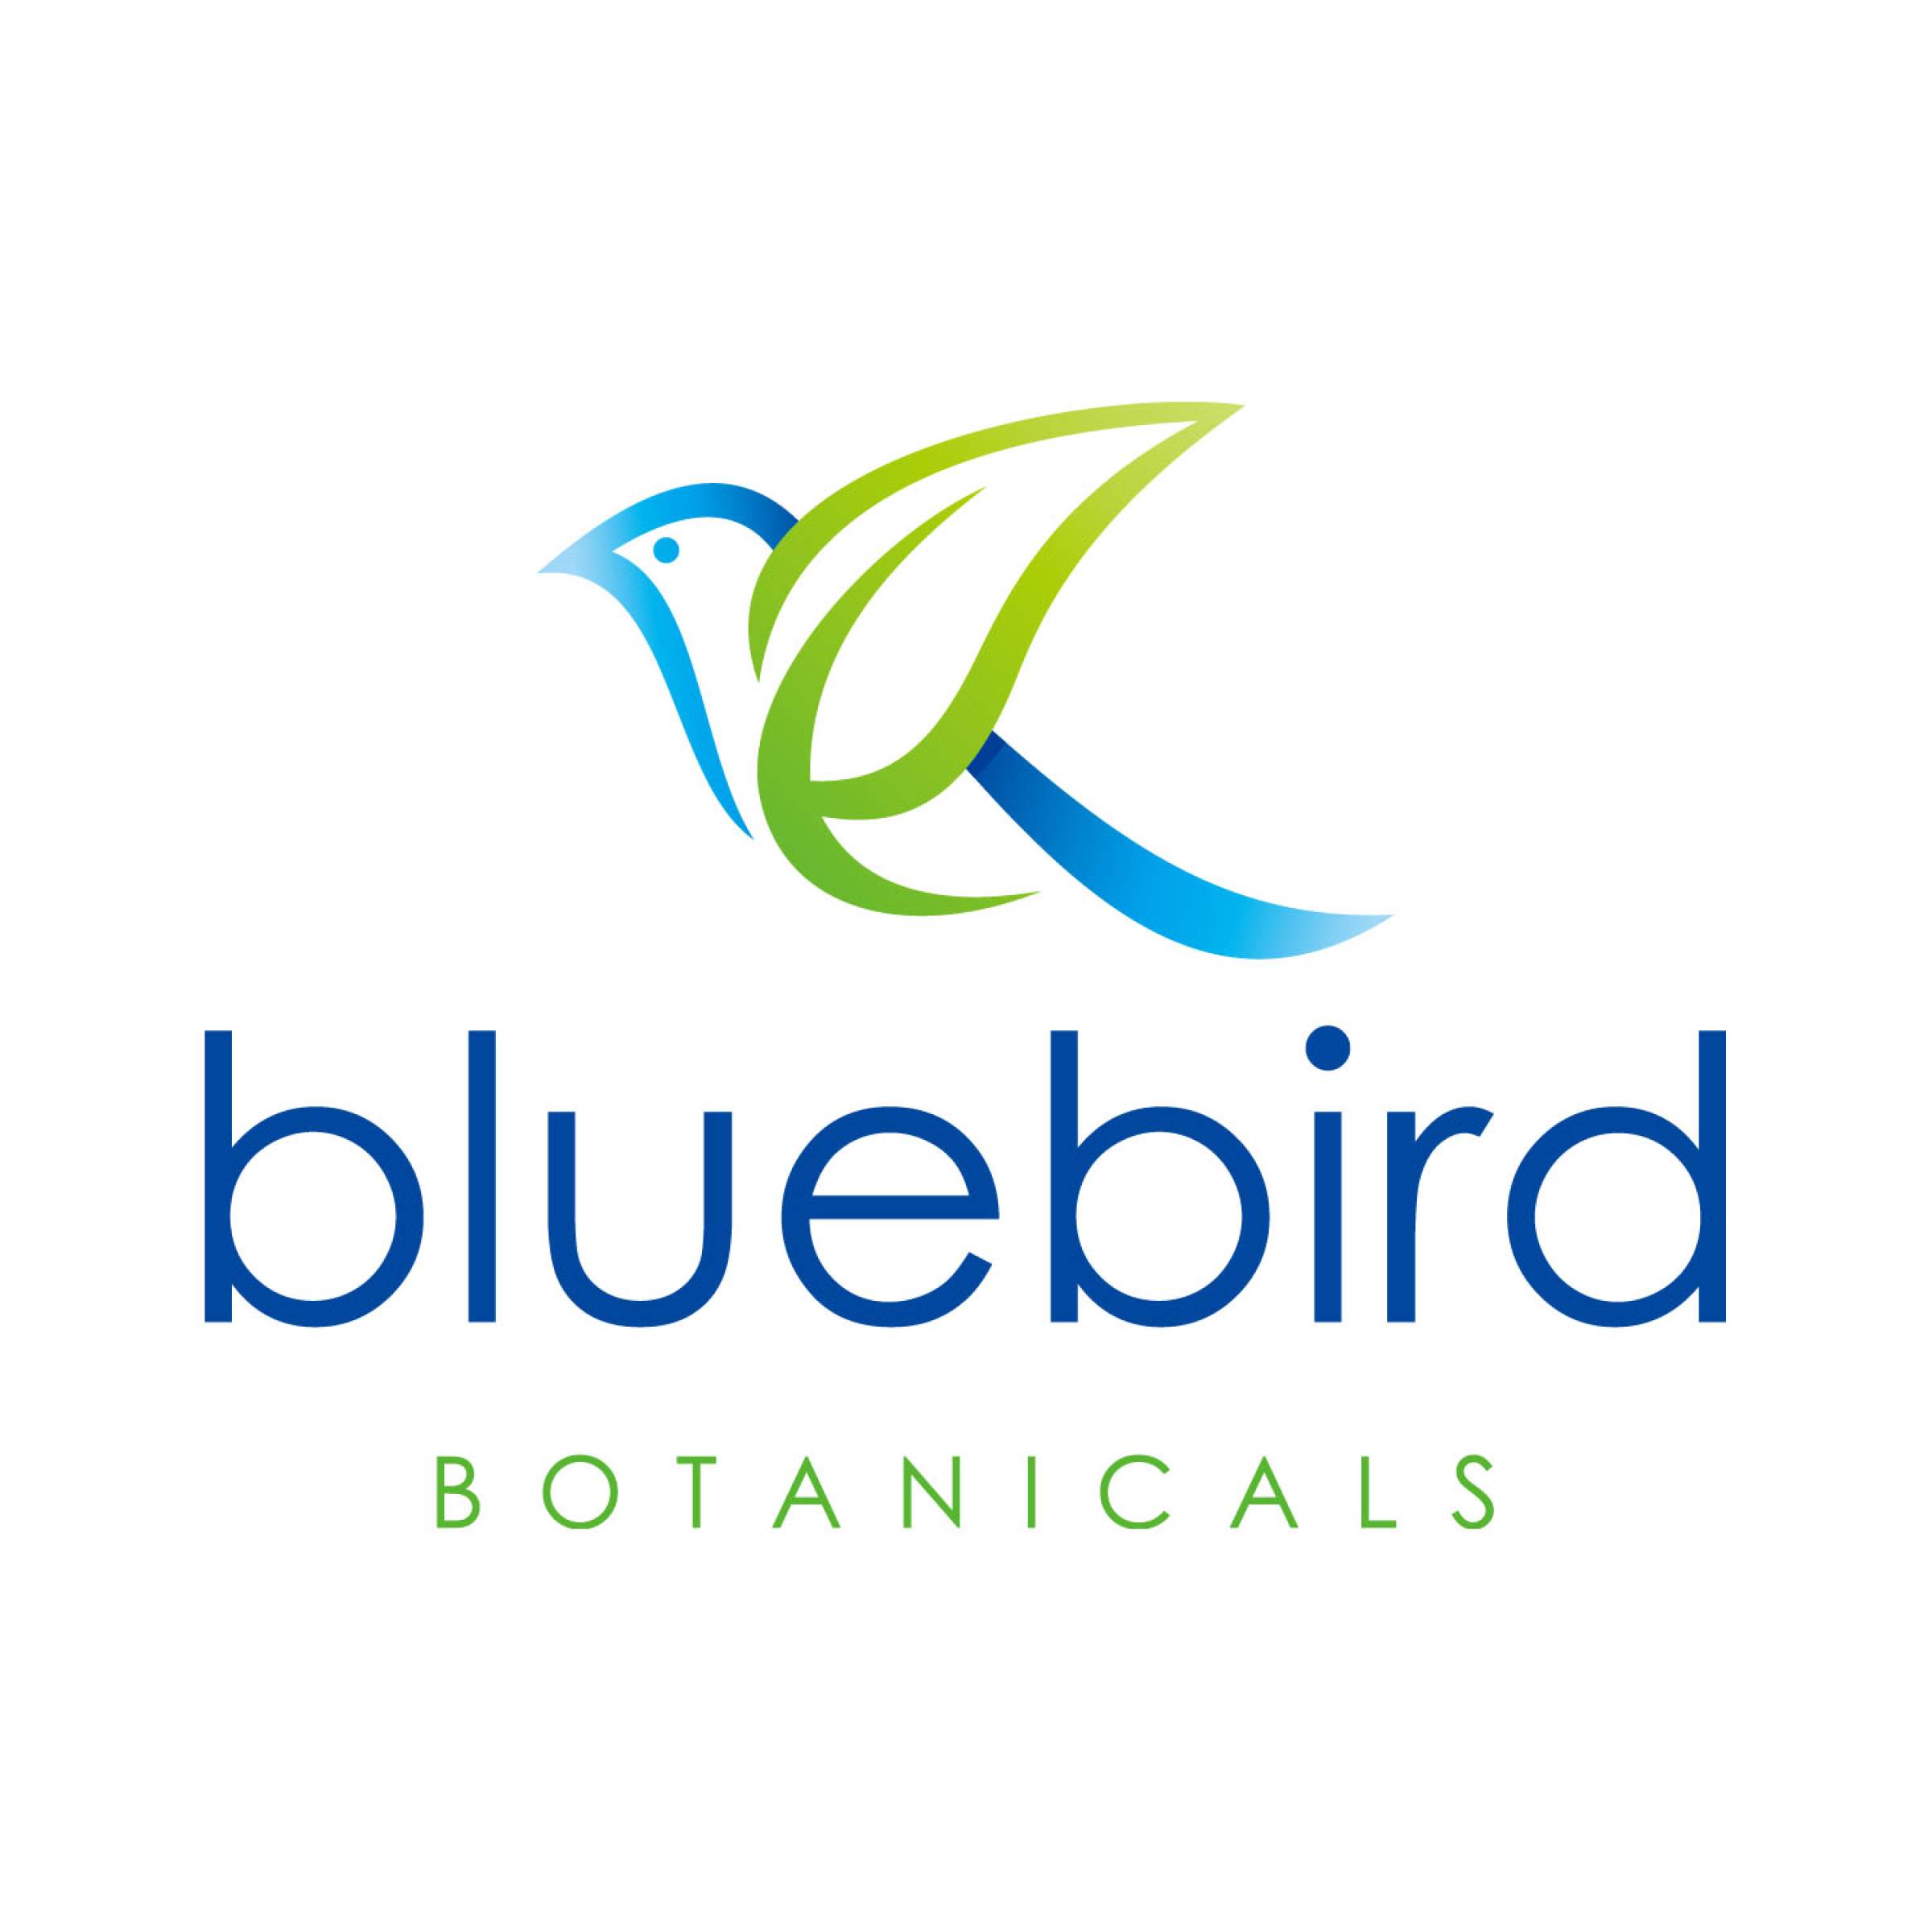 Blue Bird Brand Logo - News: Bluebird Botanicals Urges Congress to Remove Felony Provision ...